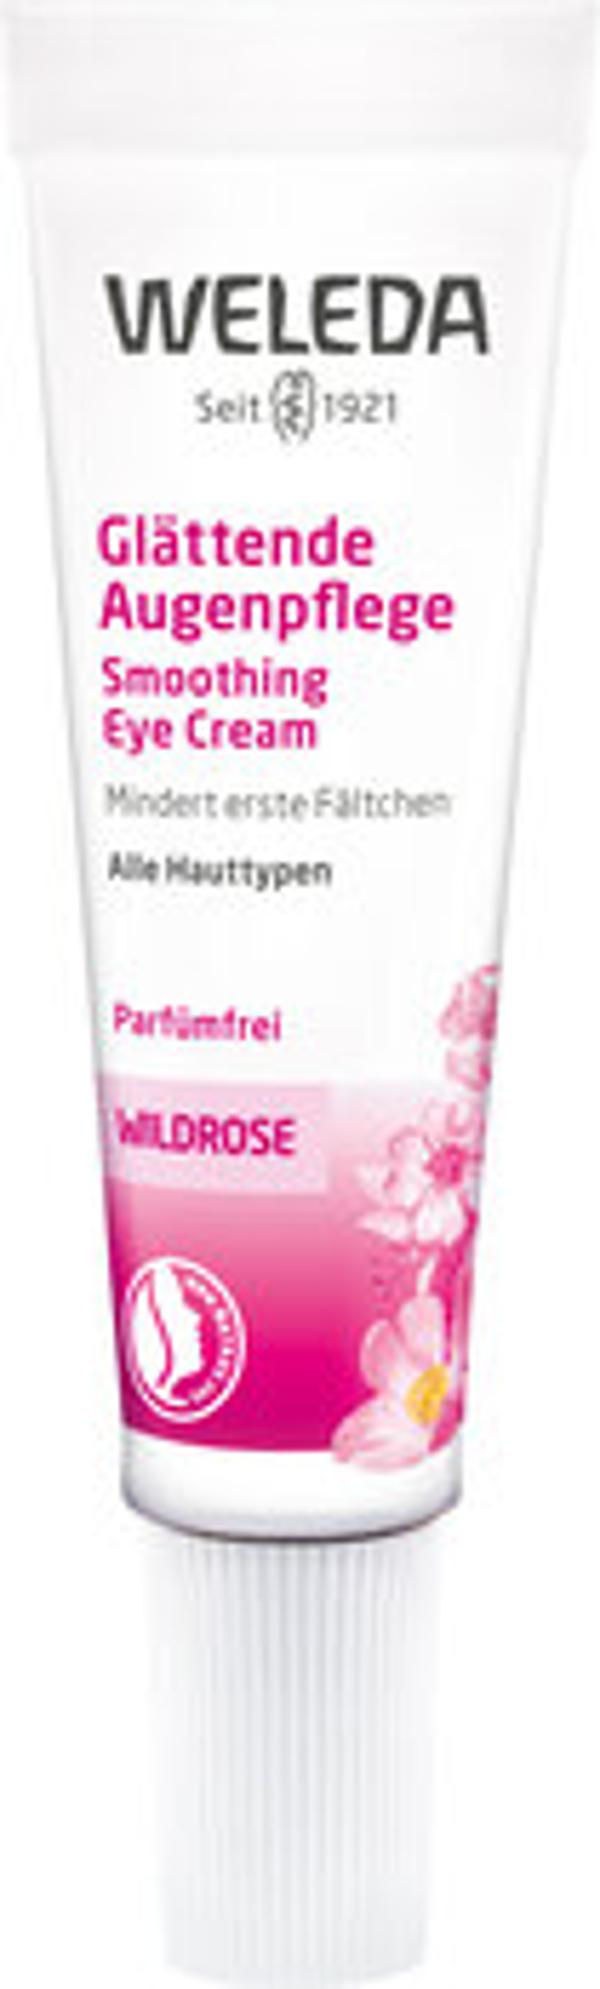 Produktfoto zu Weleda Glättende Augencreme Wildrose 10ml